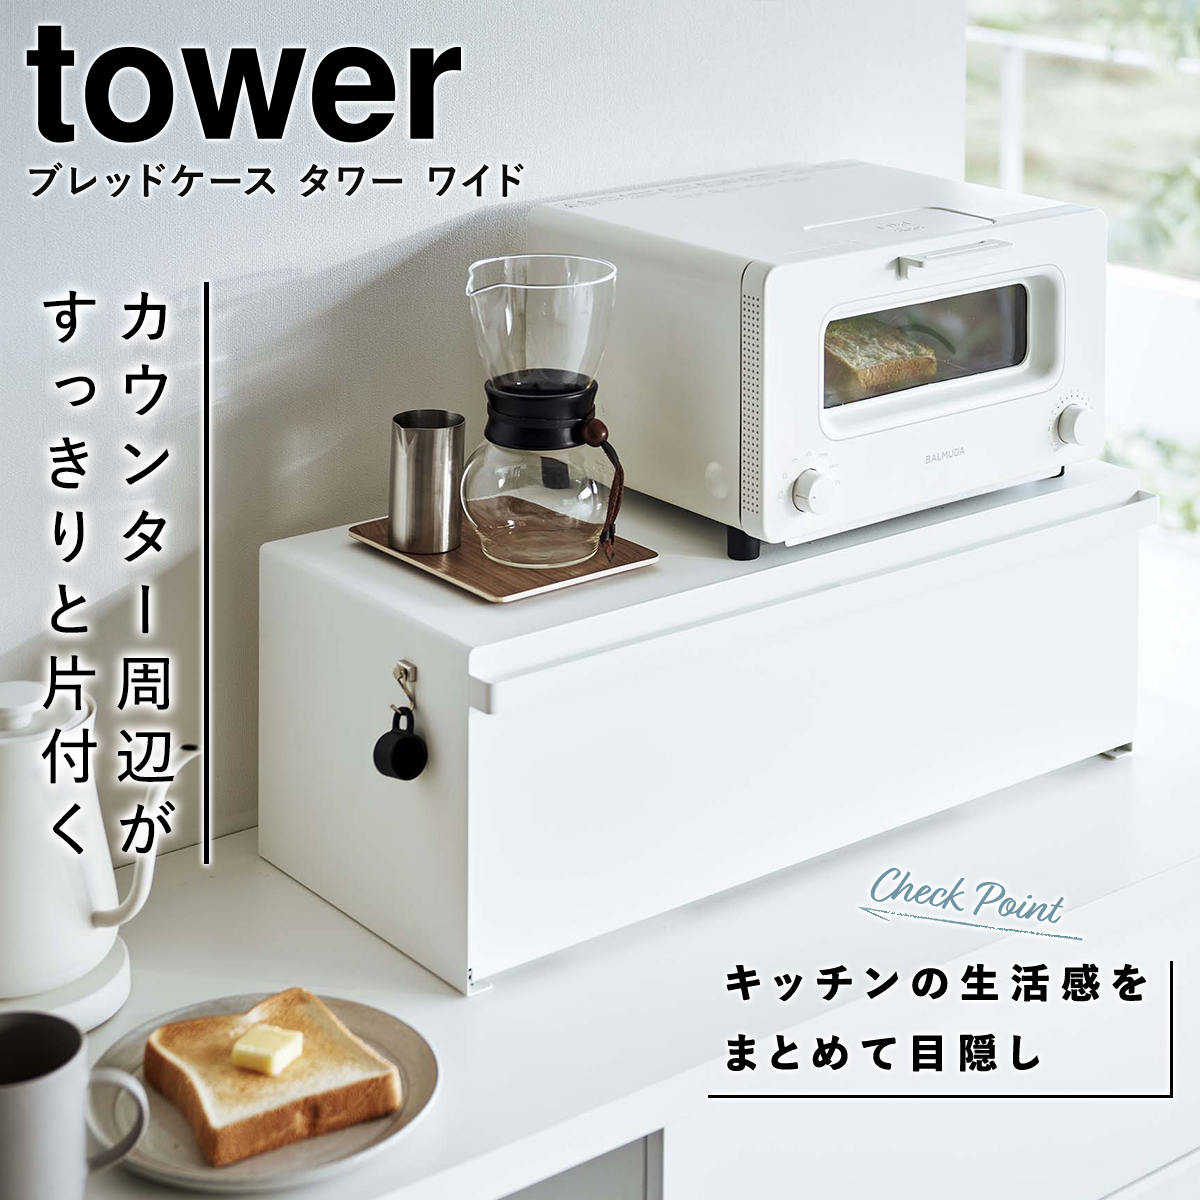  хлебница tower широкий Yamazaki реальный индустрия tower хлеб do lower хлеб место хранения белый черный yamazaki 3022 3023